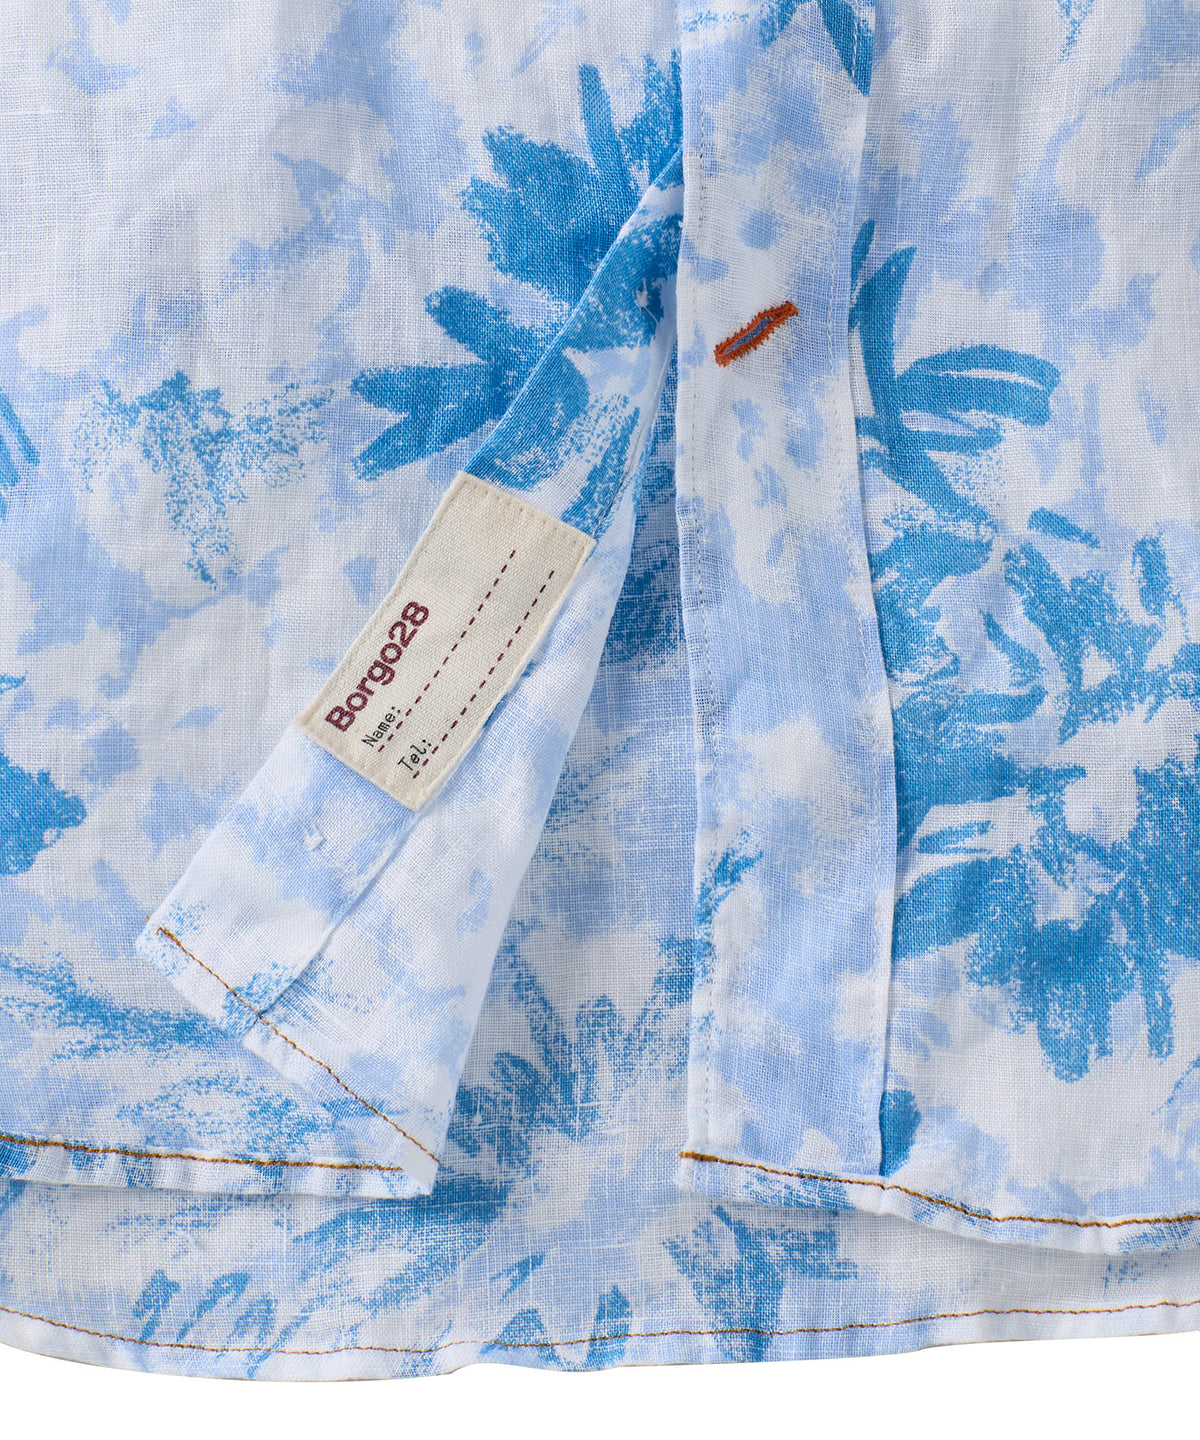 Merlino Flower Short-Sleeve Linen Sport Shirt